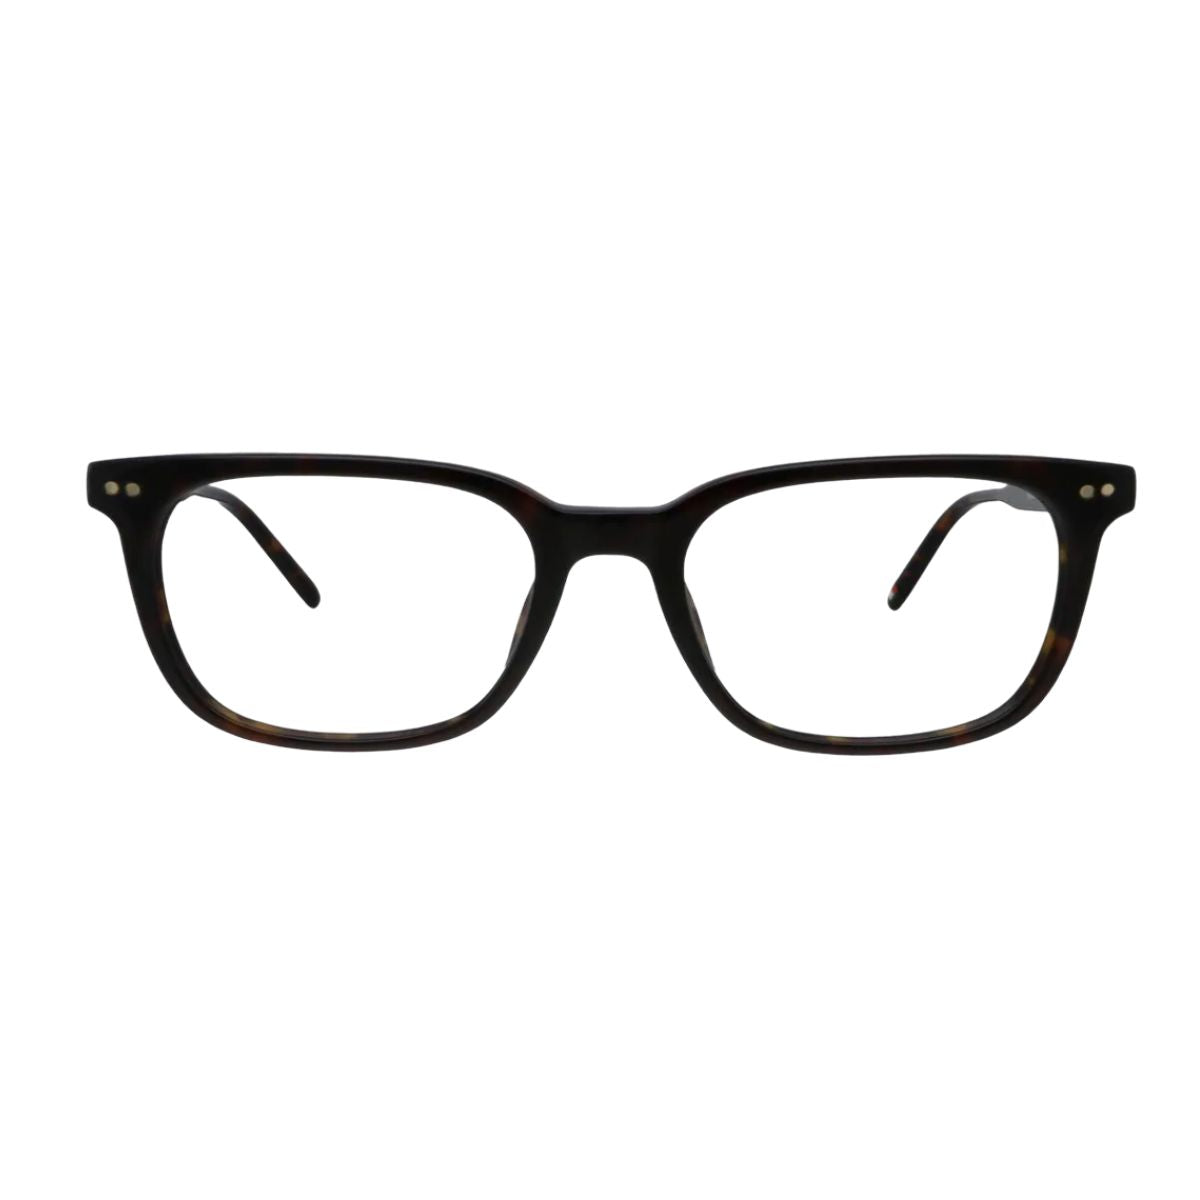 "buy Tommy Hilfiger 3183 C2 square eyeglasses frame for men's at optorium"